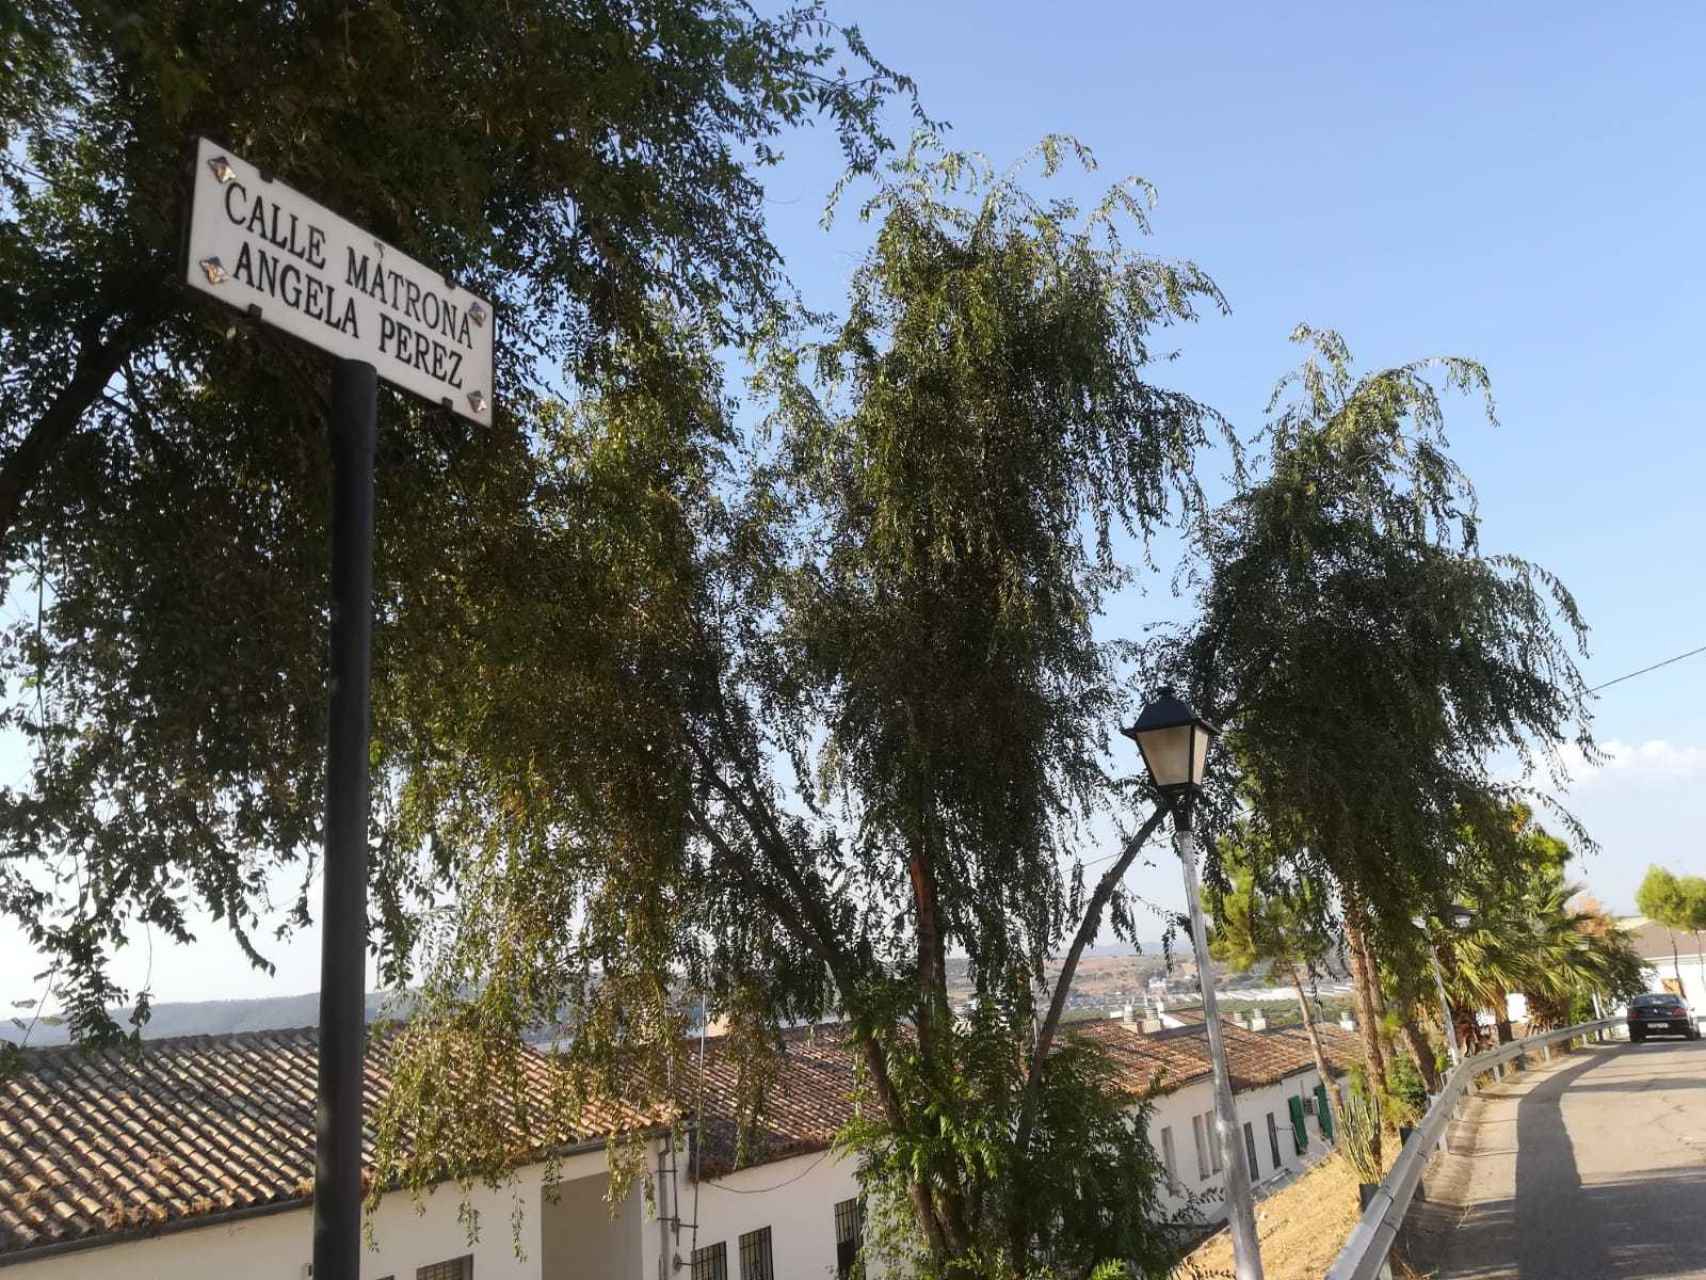 Calle en El Carpio (Córdoba) que lleva el nombre de la madre del comisario José Manuel Villarejo.